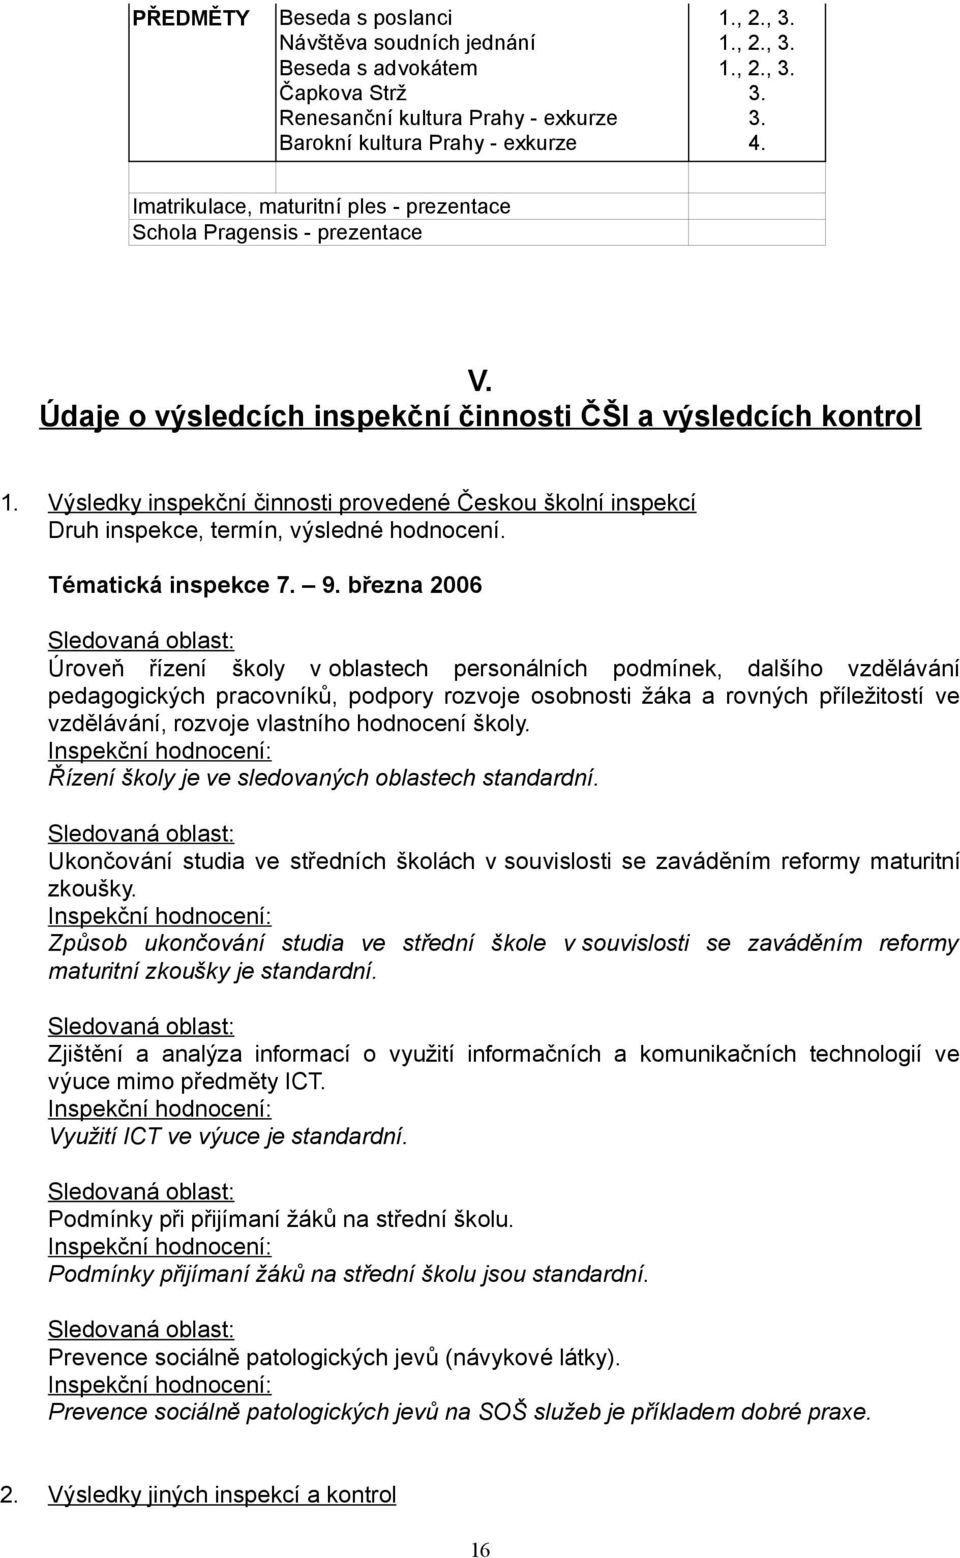 Výsledky inspekční činnosti provedené Českou školní inspekcí Druh inspekce, termín, výsledné hodnocení. Tématická inspekce 7. 9.